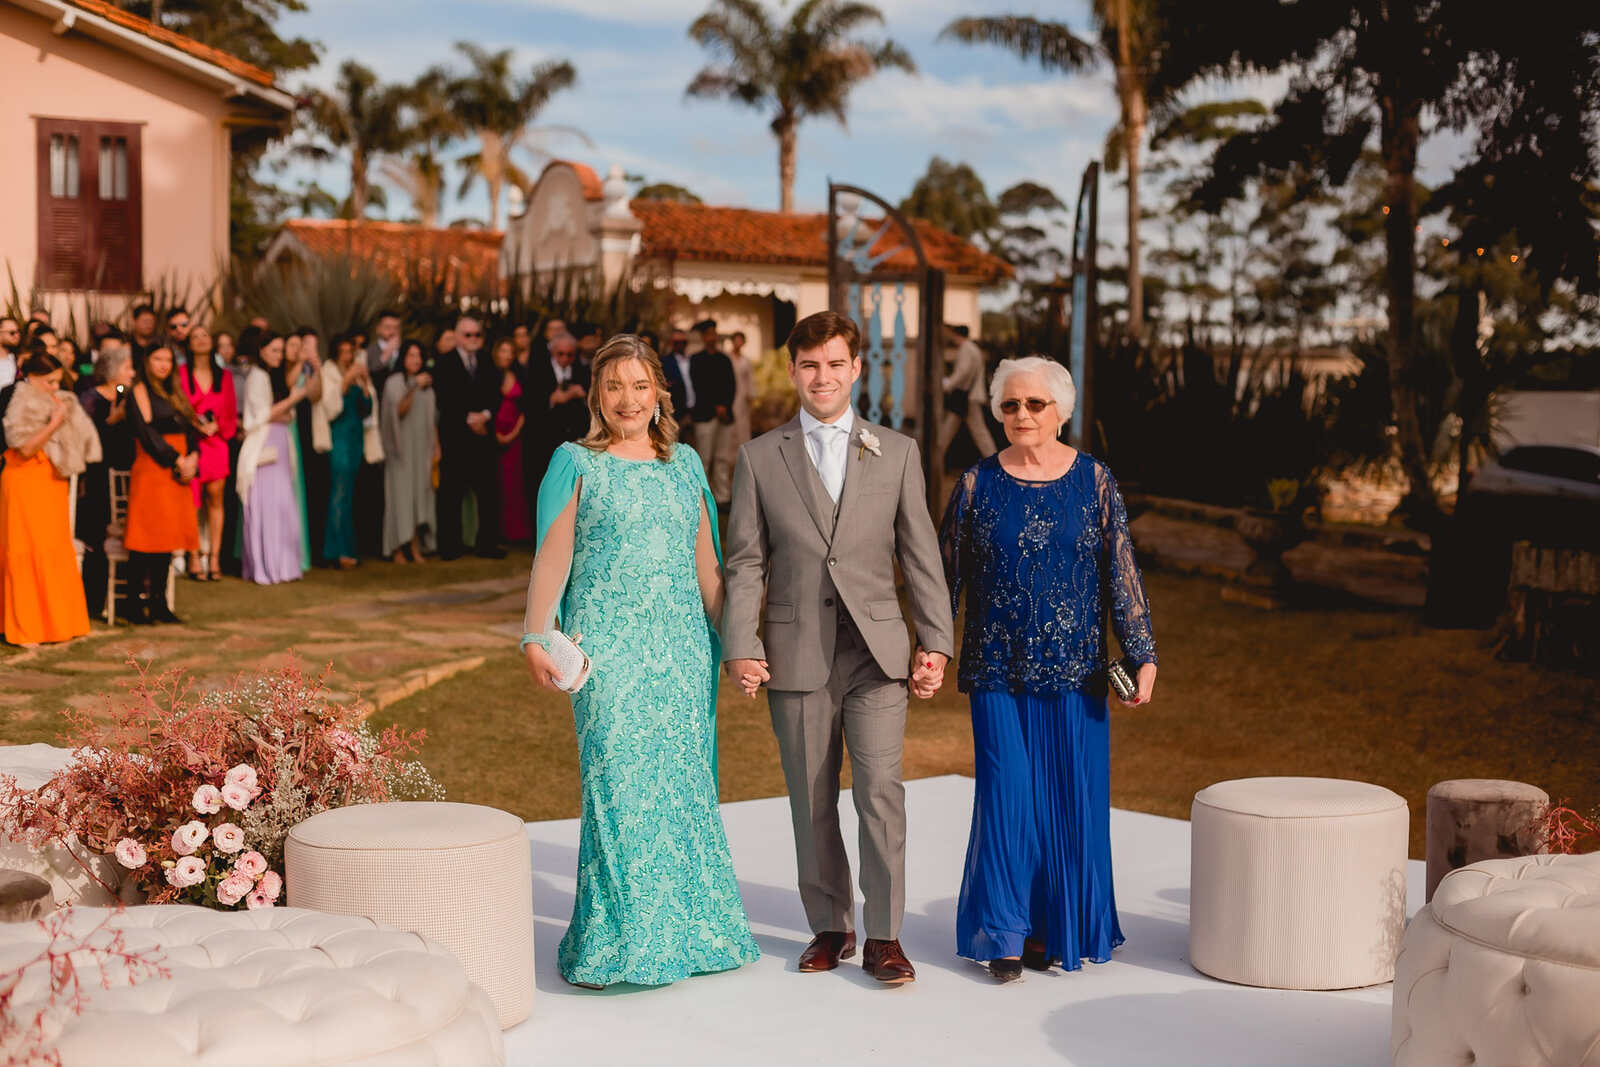 entrada do noivo com terno cinza ao lado da mãe com vestido azul tiffany e avó com vestido azul cobalto